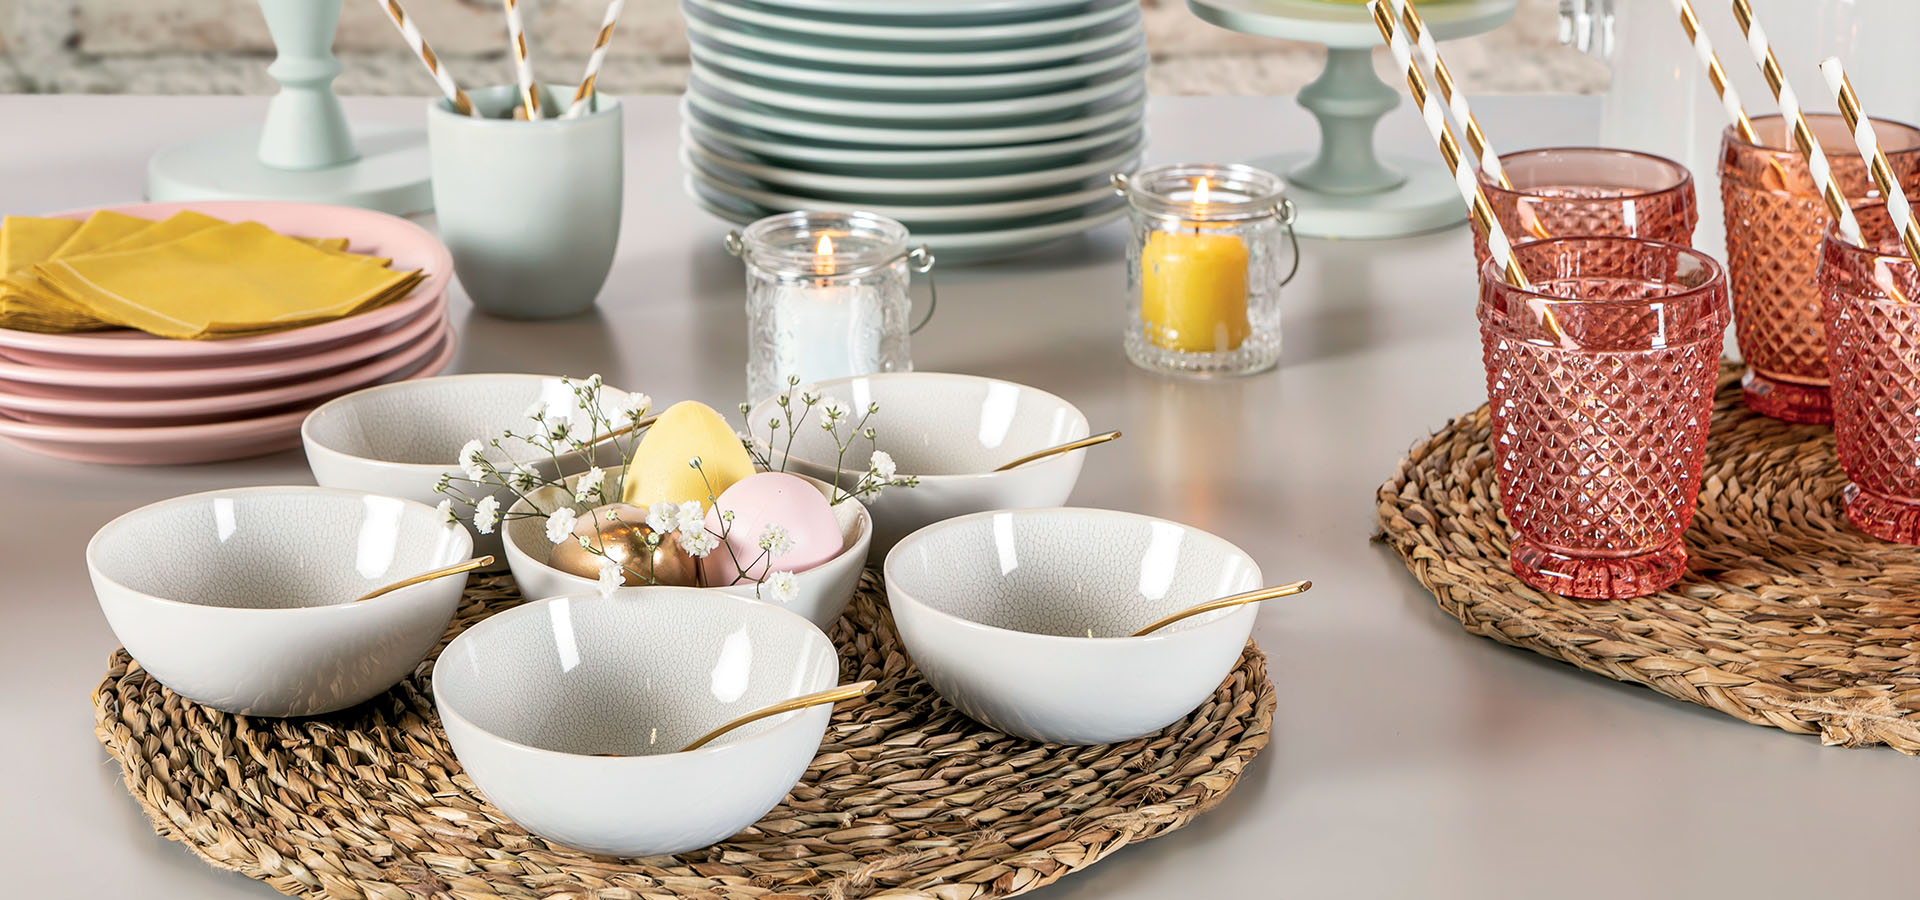 Location de vaisselle pour repas de Pâques : élégance et practicité